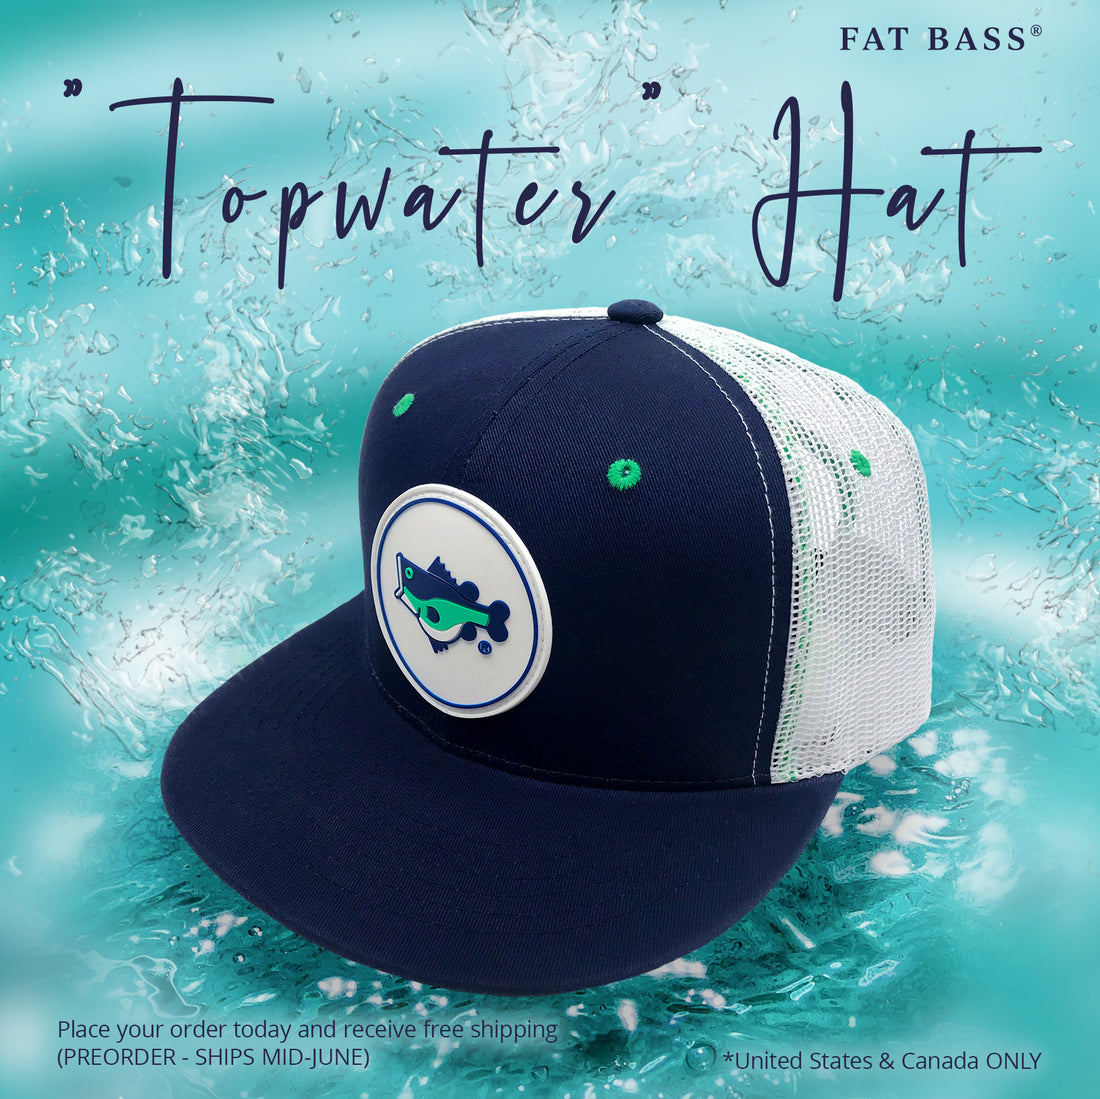 FAT BASS "TOPWATER" Hat